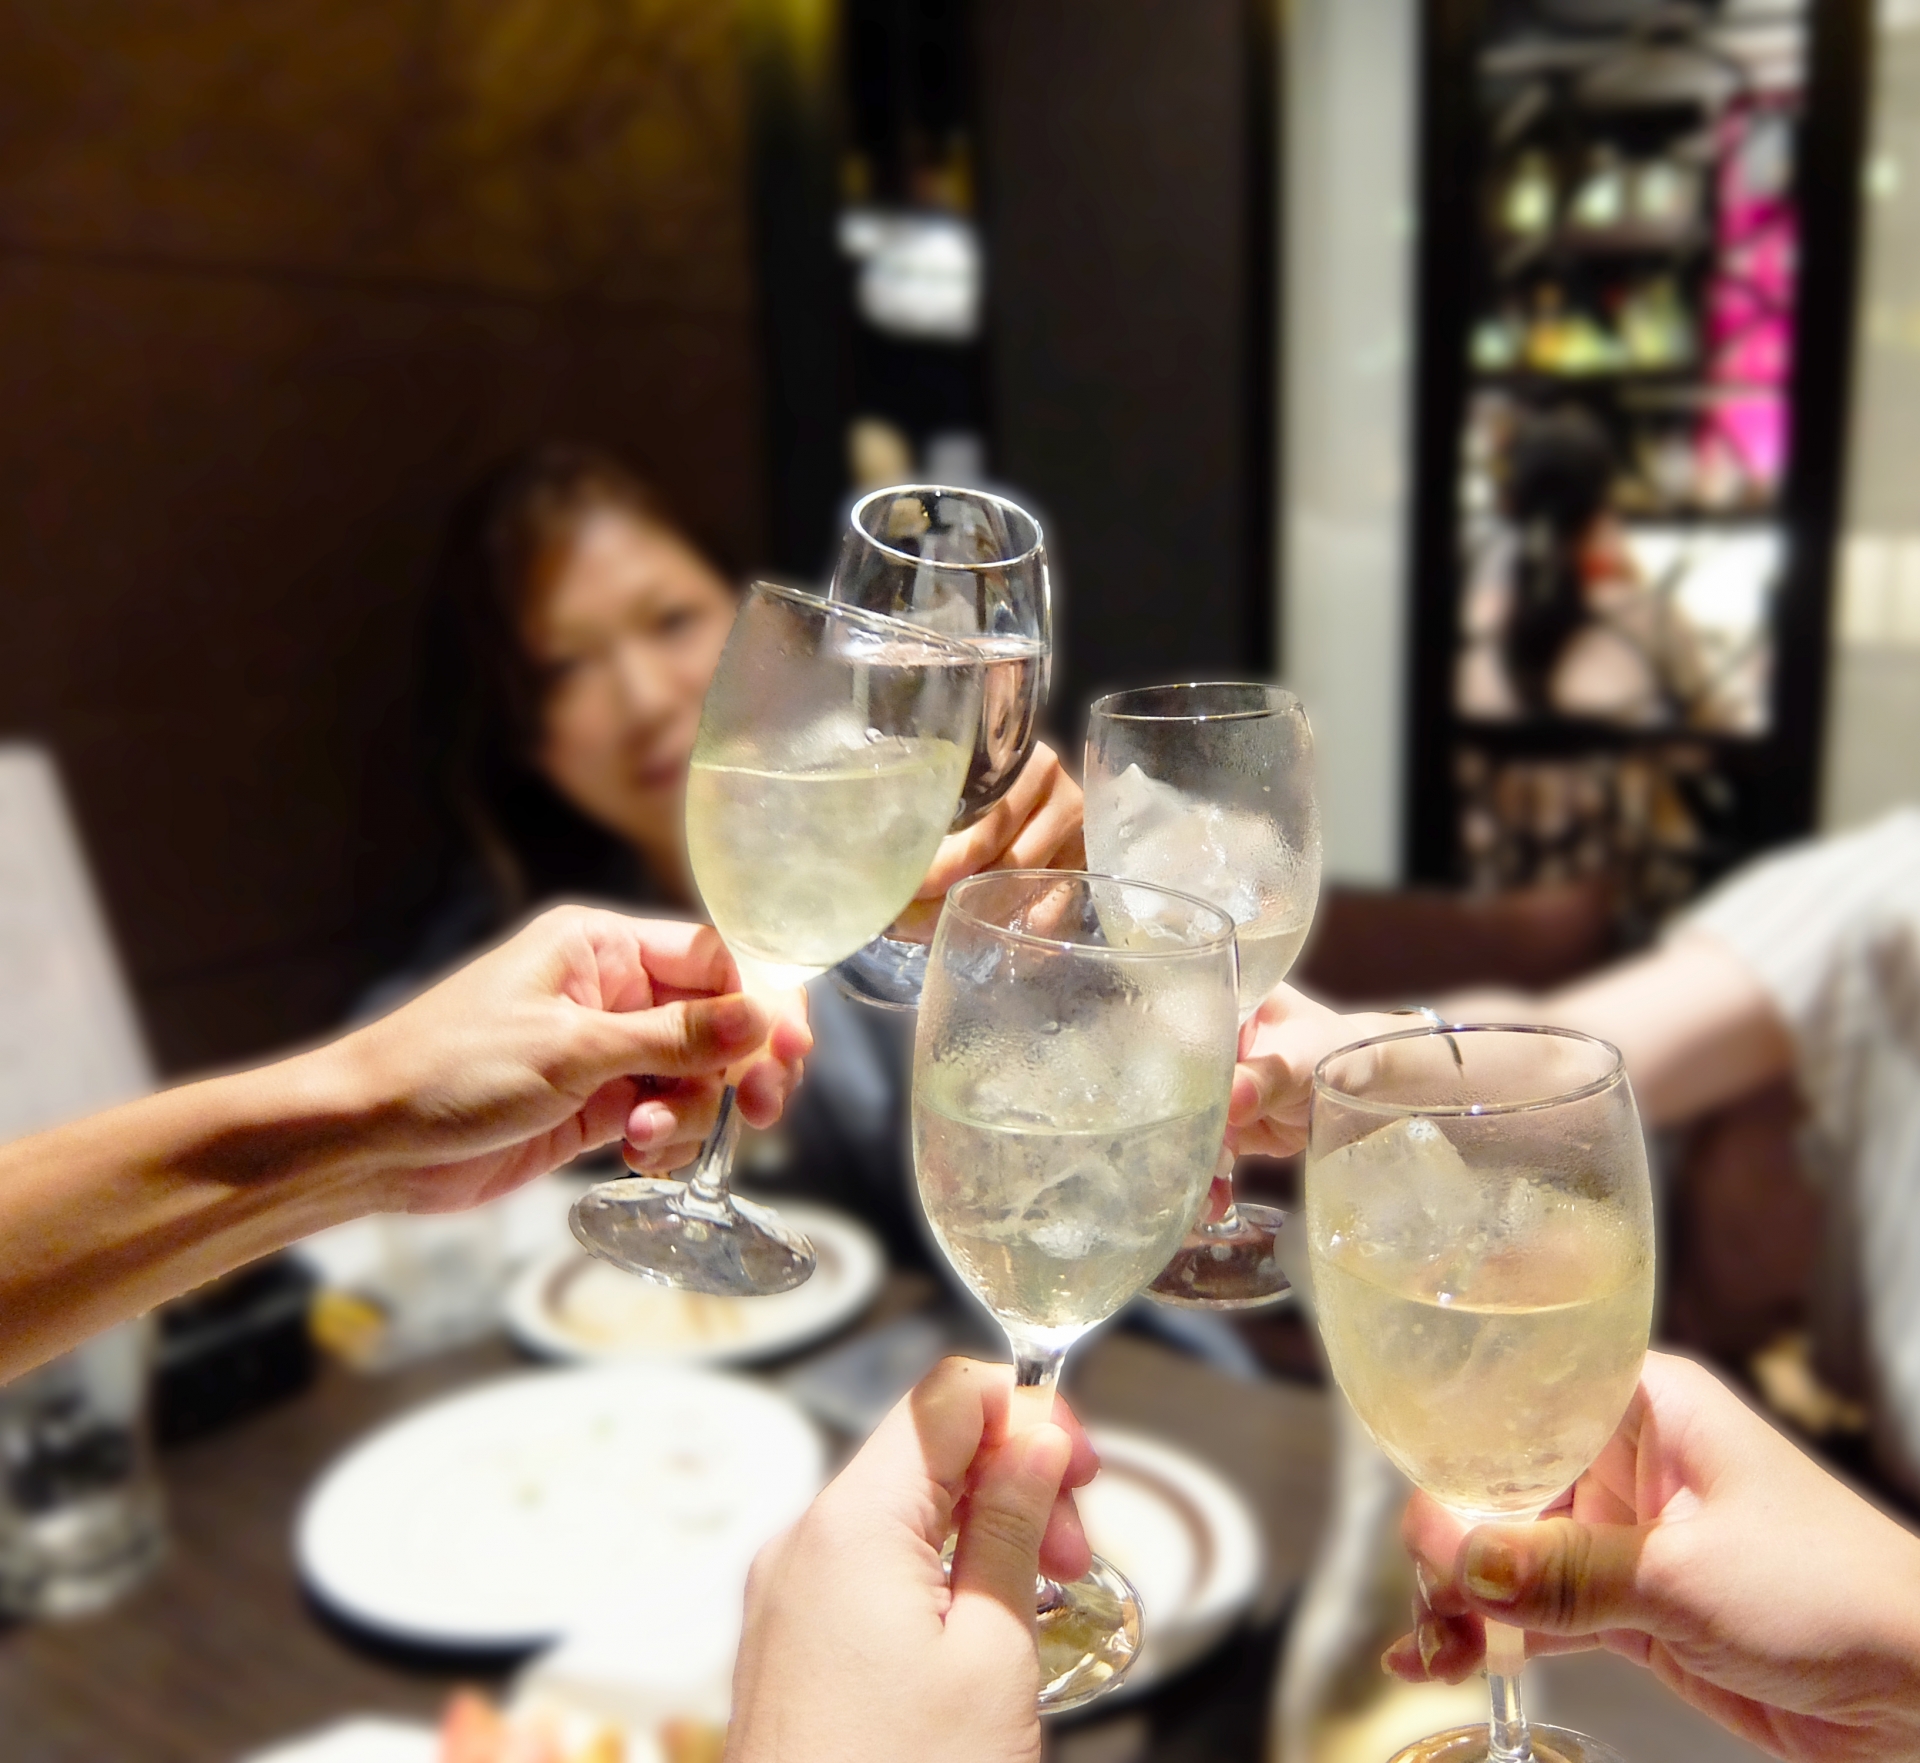 Rainbow Color主催 ピザ食べ放題 ワイン飲み放題 新宿 日本最大級のカフェ会 交流会予約サイト サポートイベント